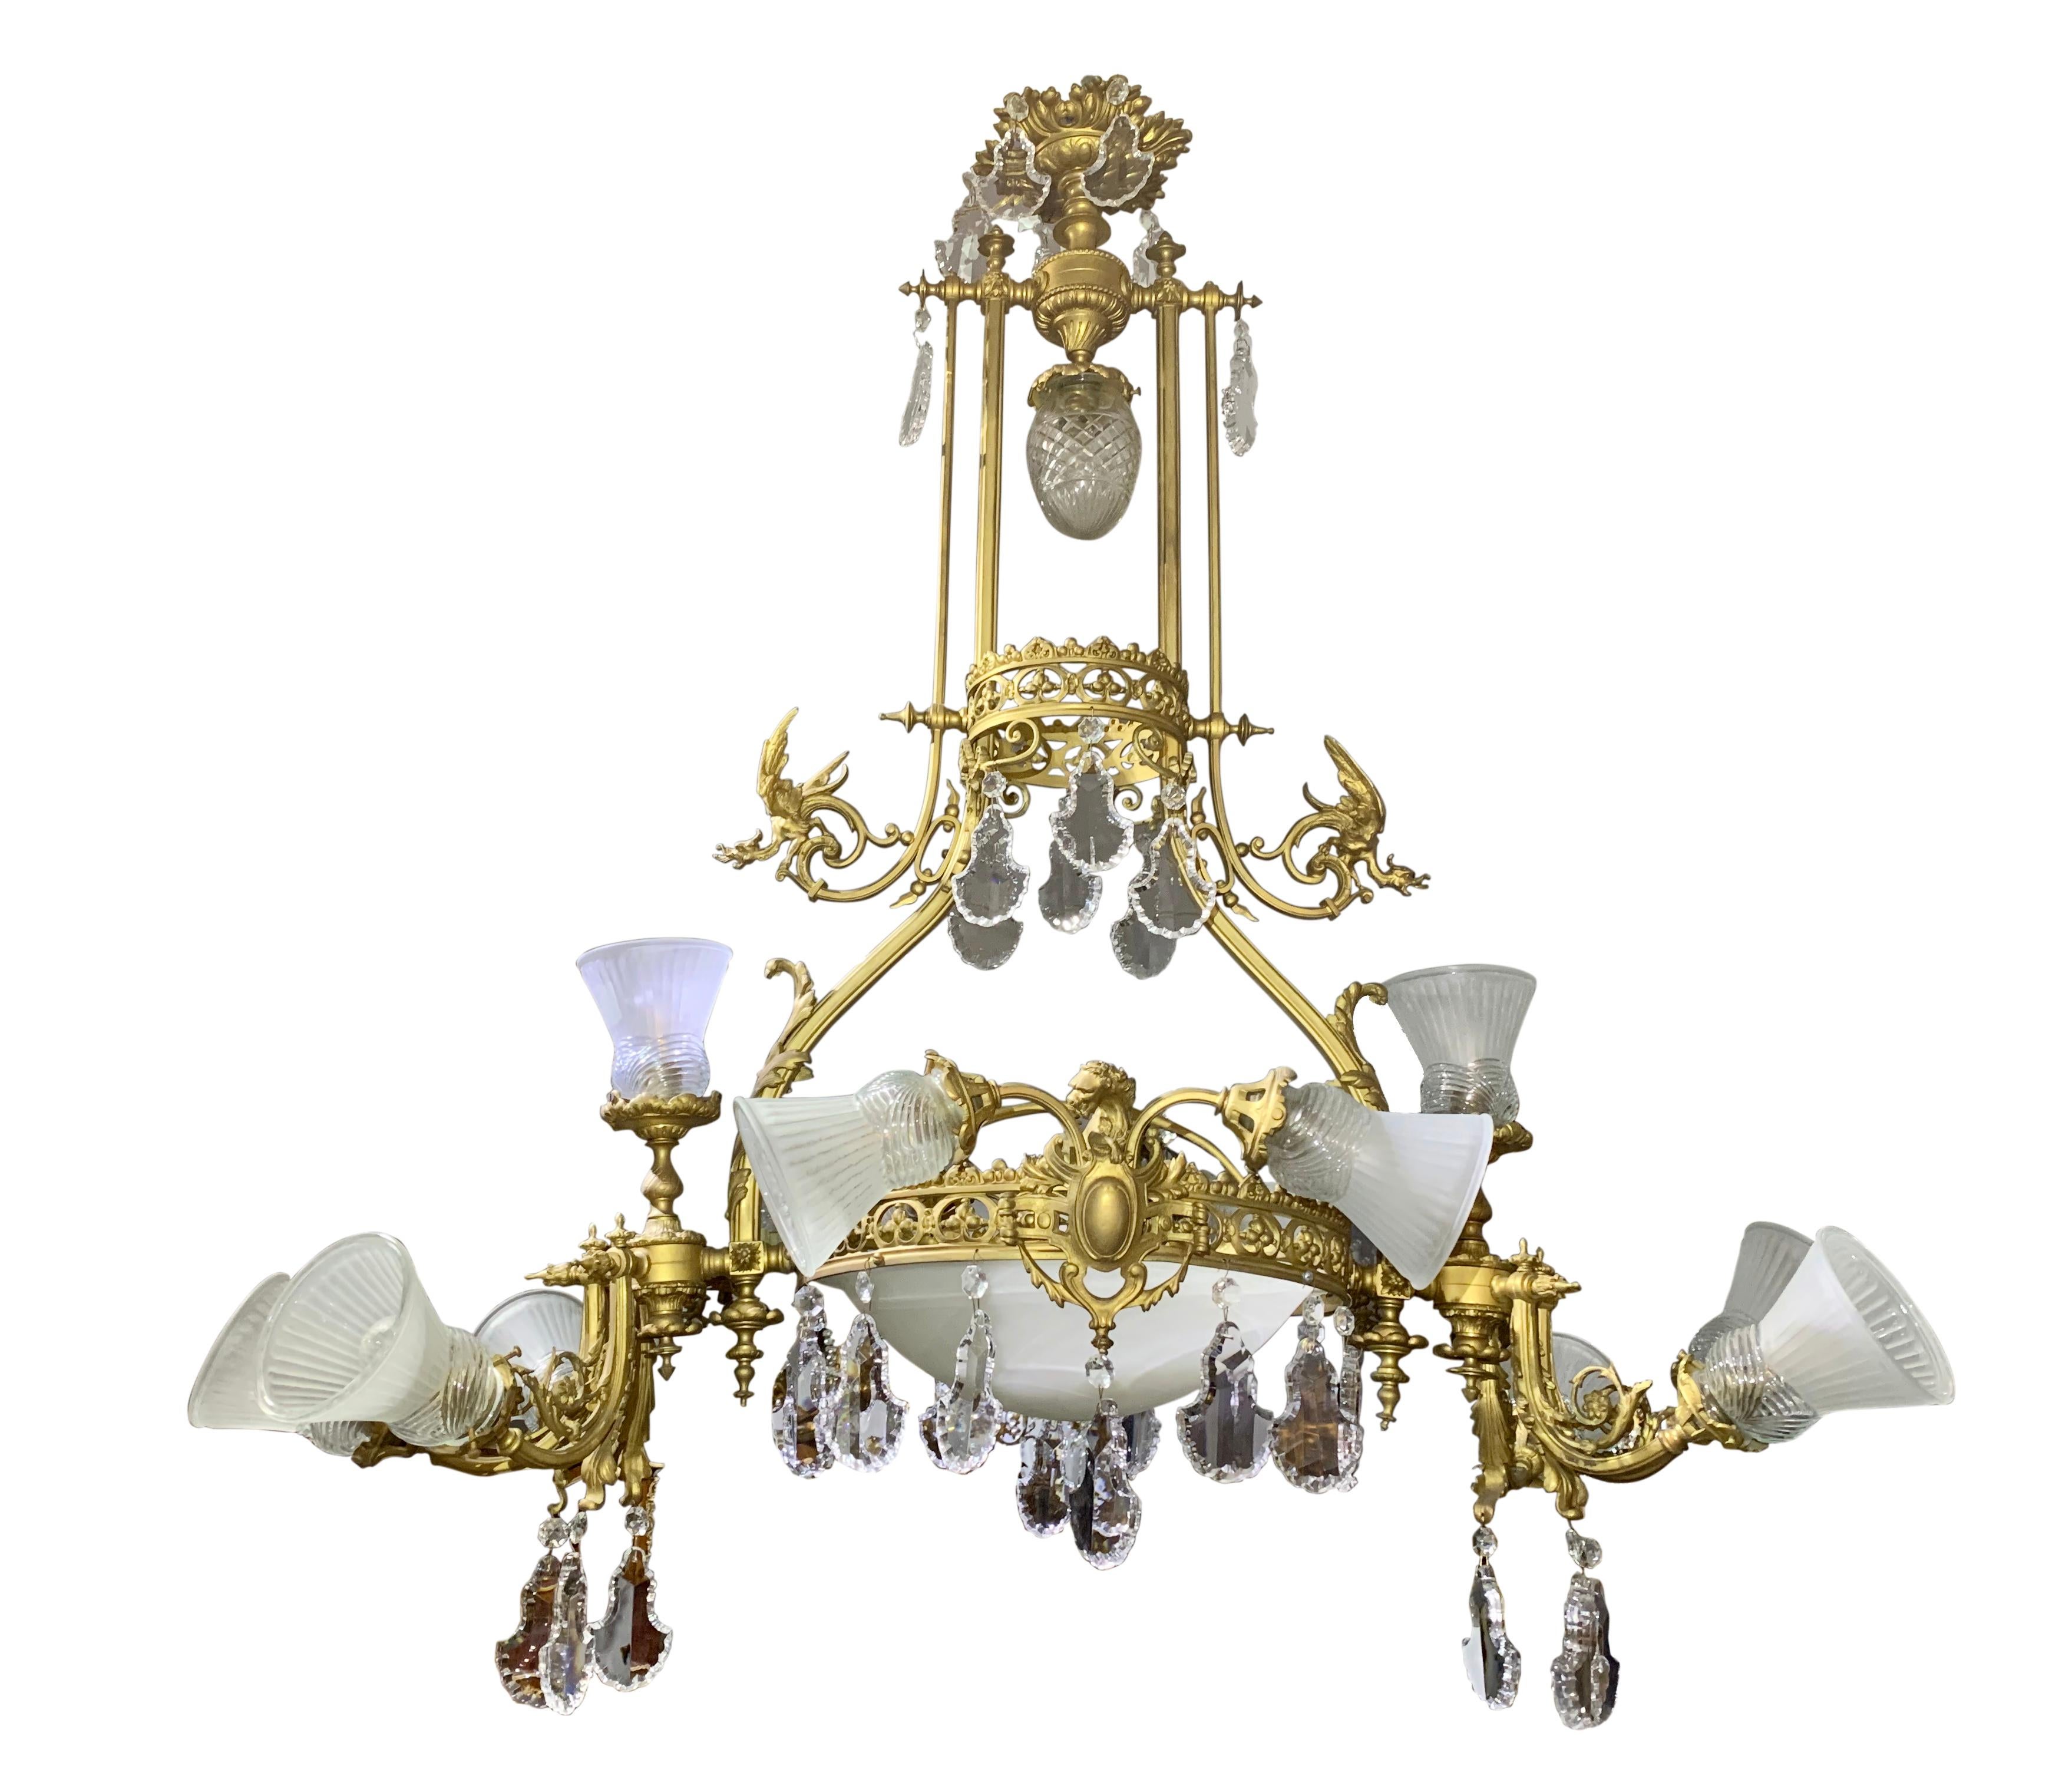 Großer französischer Kronleuchter mit zwölf ovalen Lichtern aus vergoldeter Bronze und Kristall im Stil der neoklassizistischen Wiedergeburt des späten 19.

Paris, um 1890

Höhe: 51